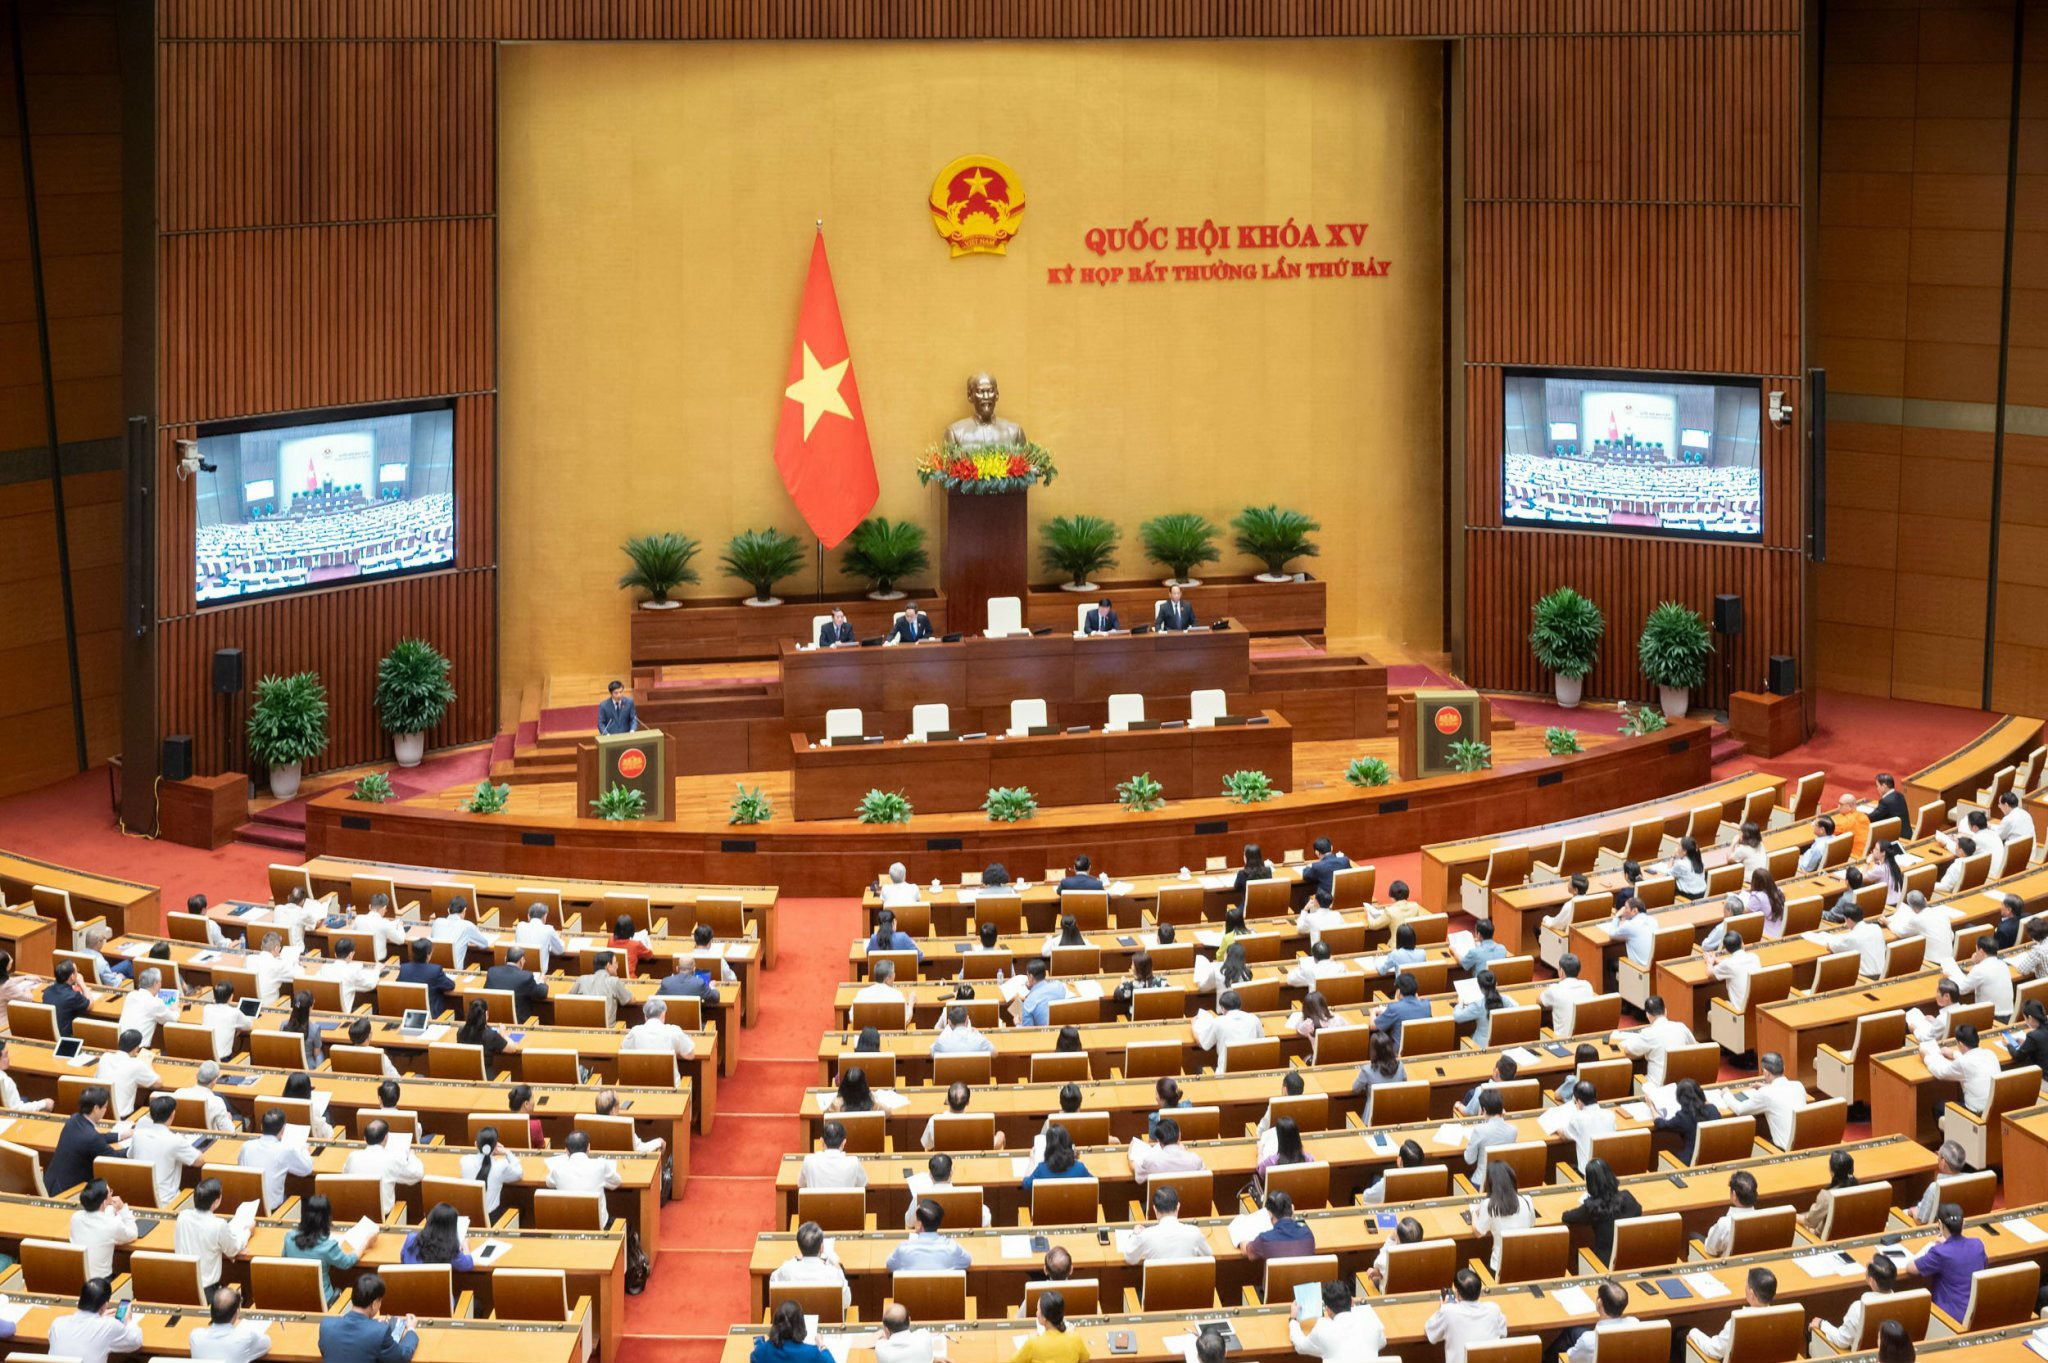 Quốc hội khóa XV tổ chức Kỳ họp bất thường lần thứ 7 - Ảnh 1.